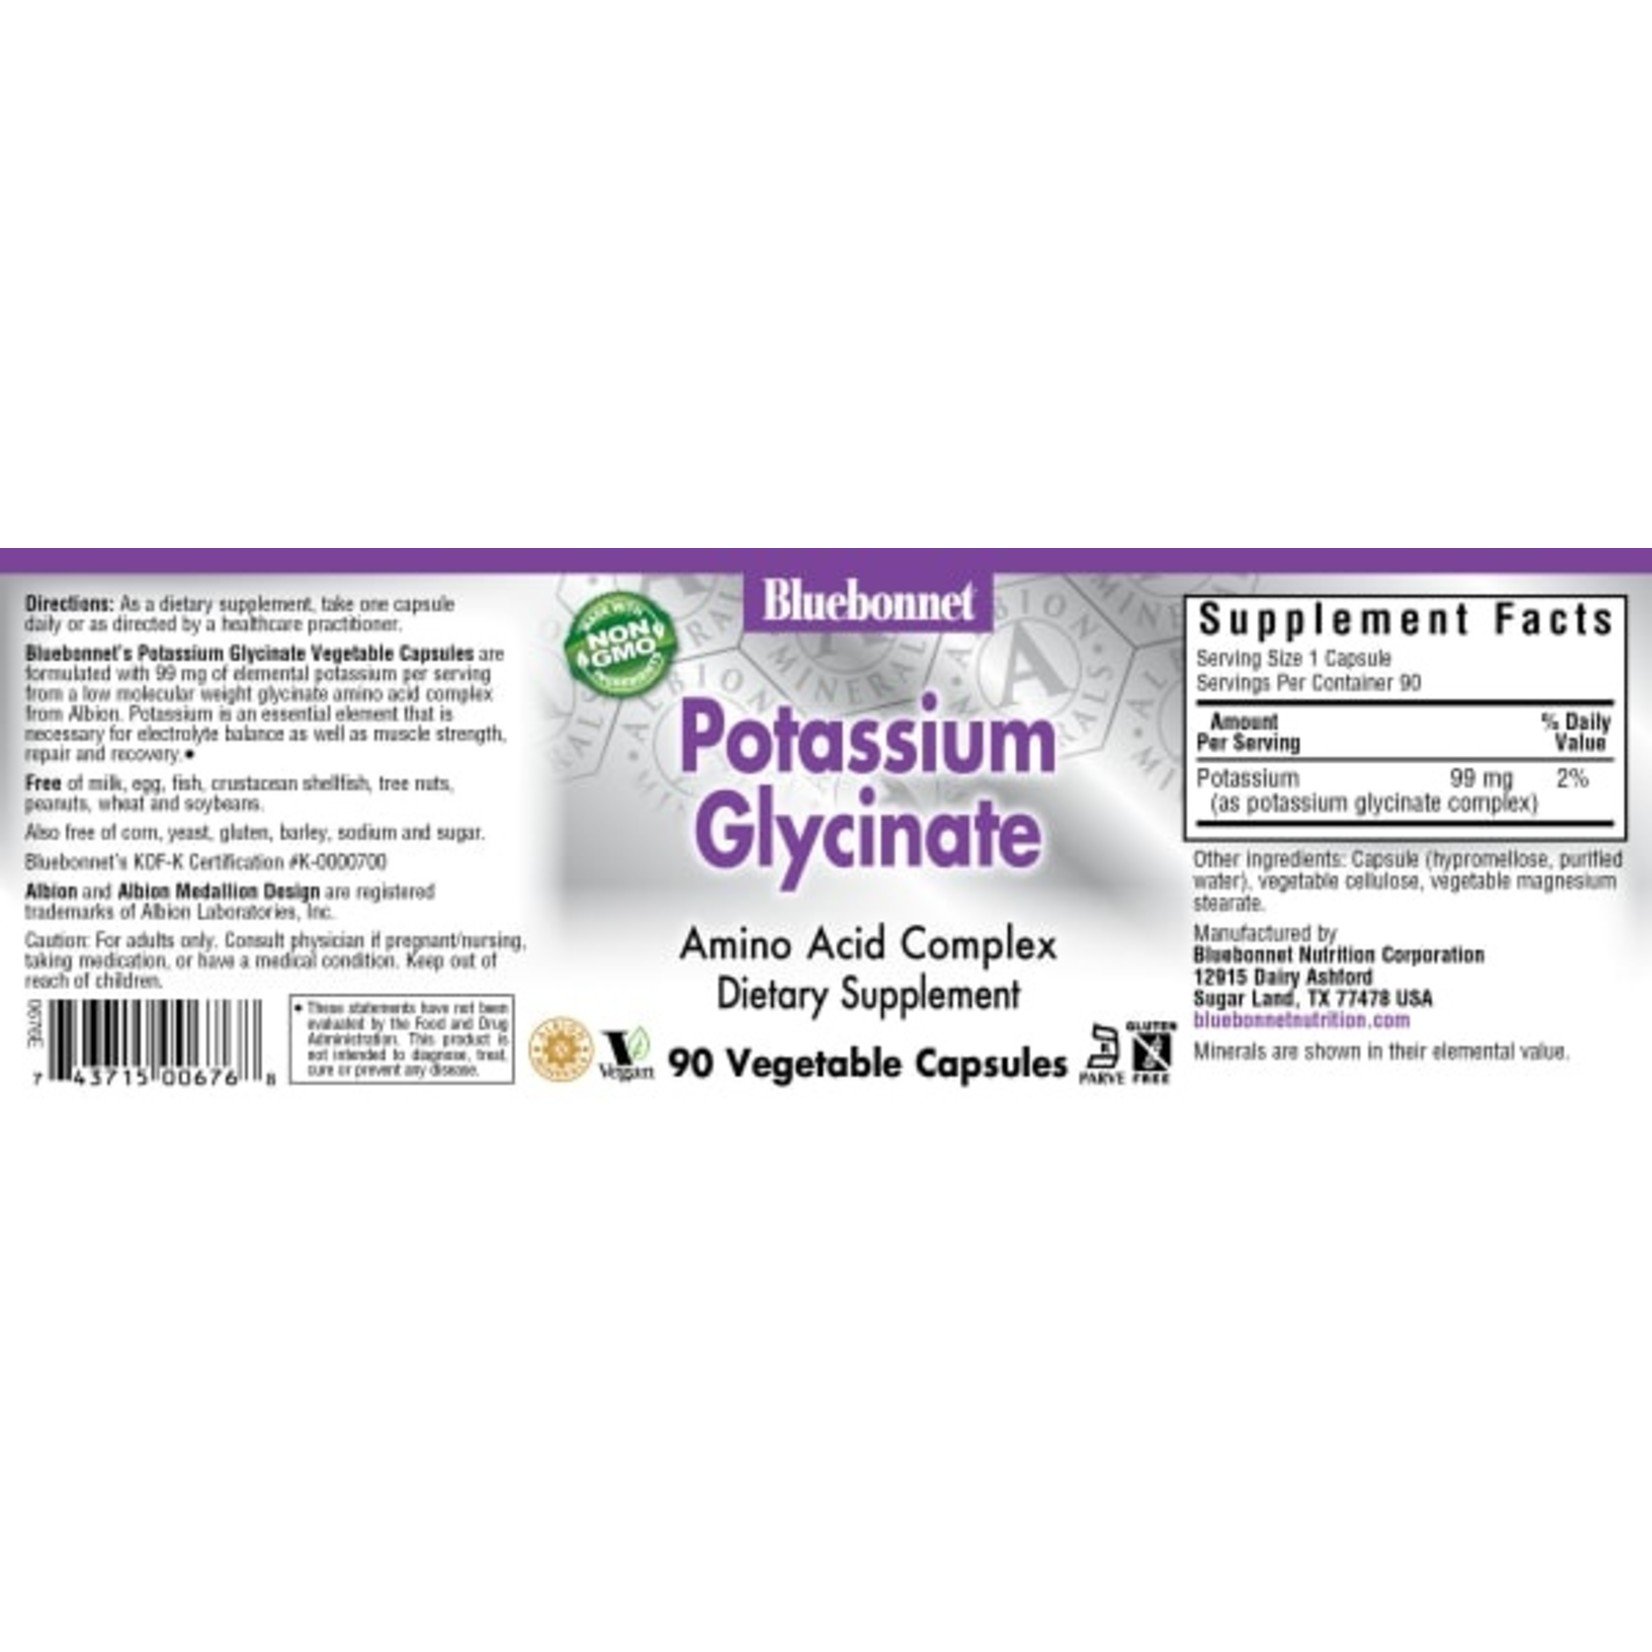 Bluebonnet Bluebonnet - Potassium Glycinate 99 mg - 90 Veg Capsules